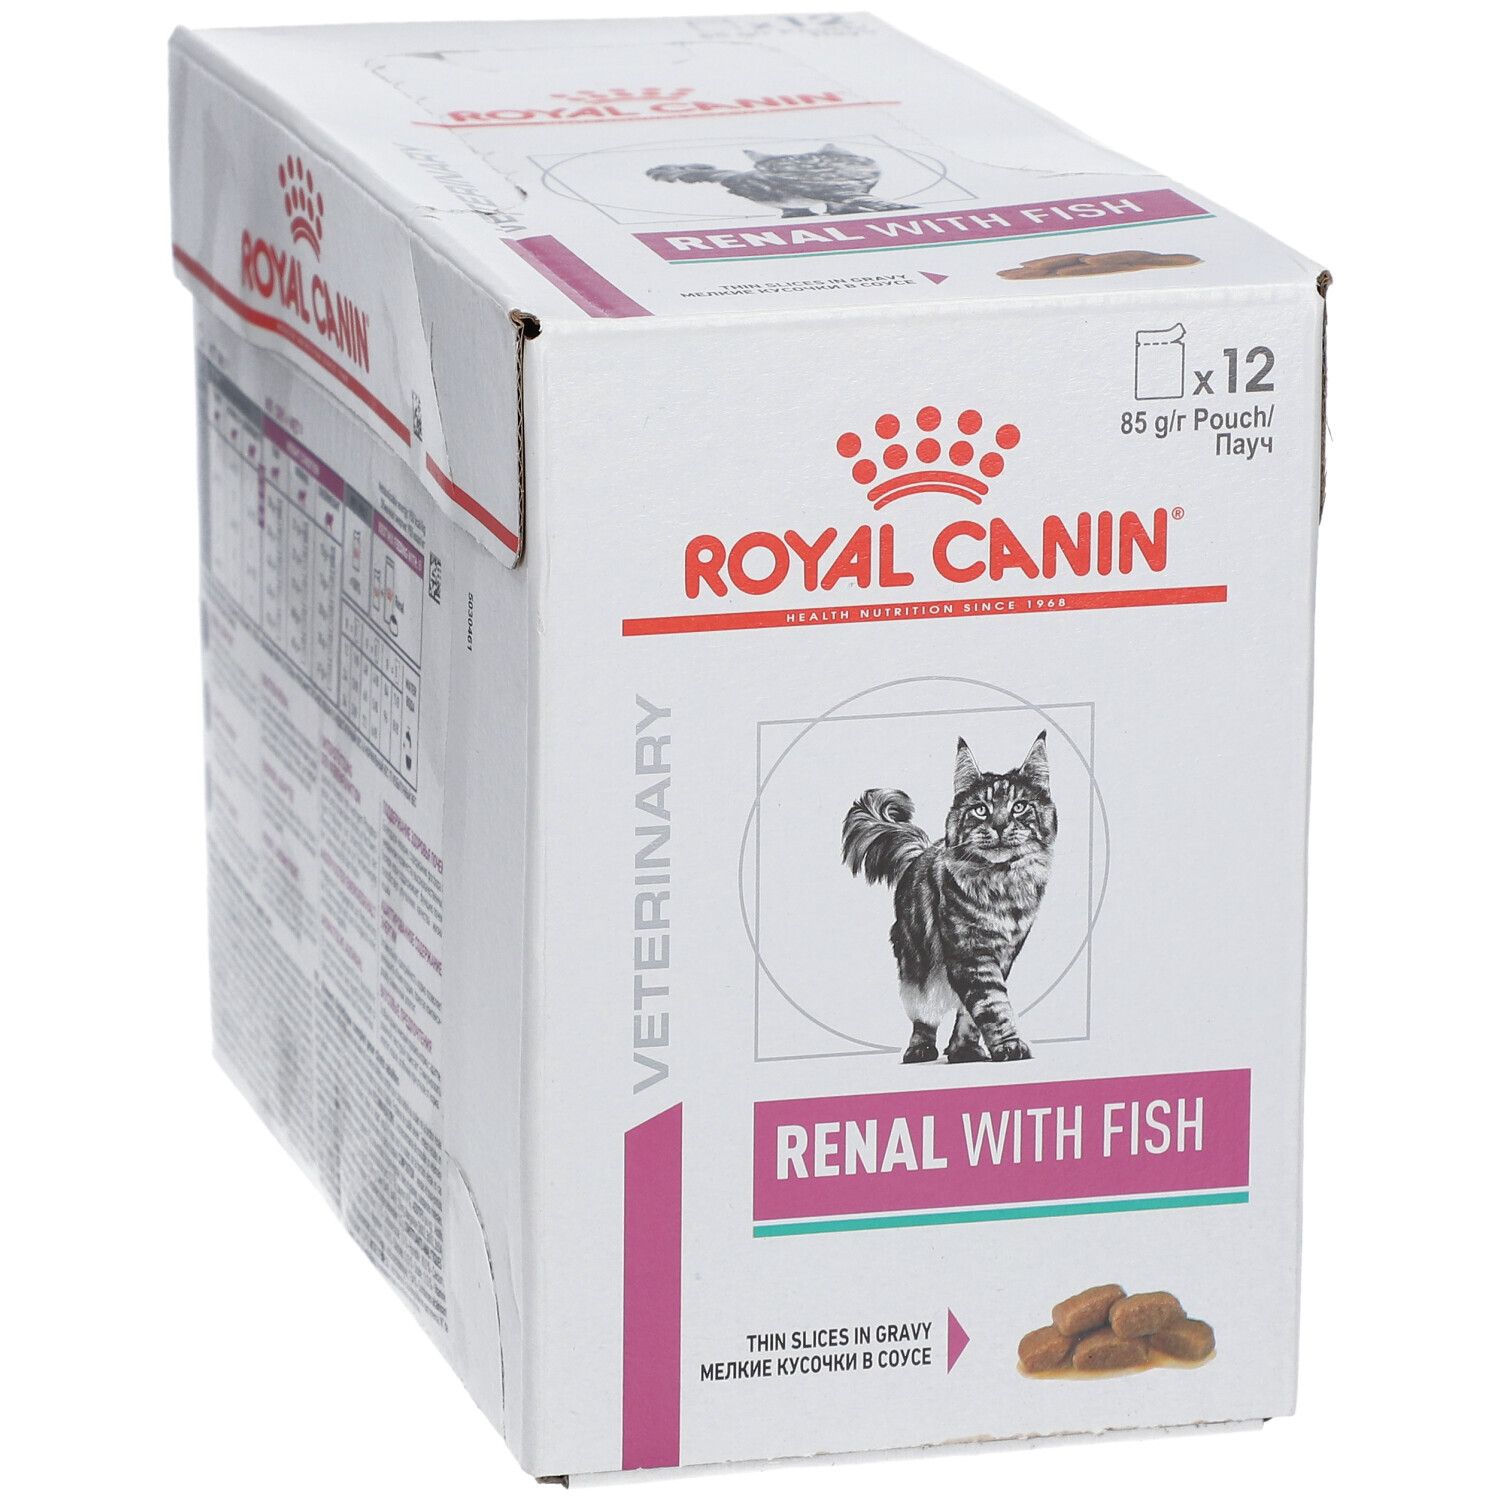 ROYAL CANIN Renal Fisch